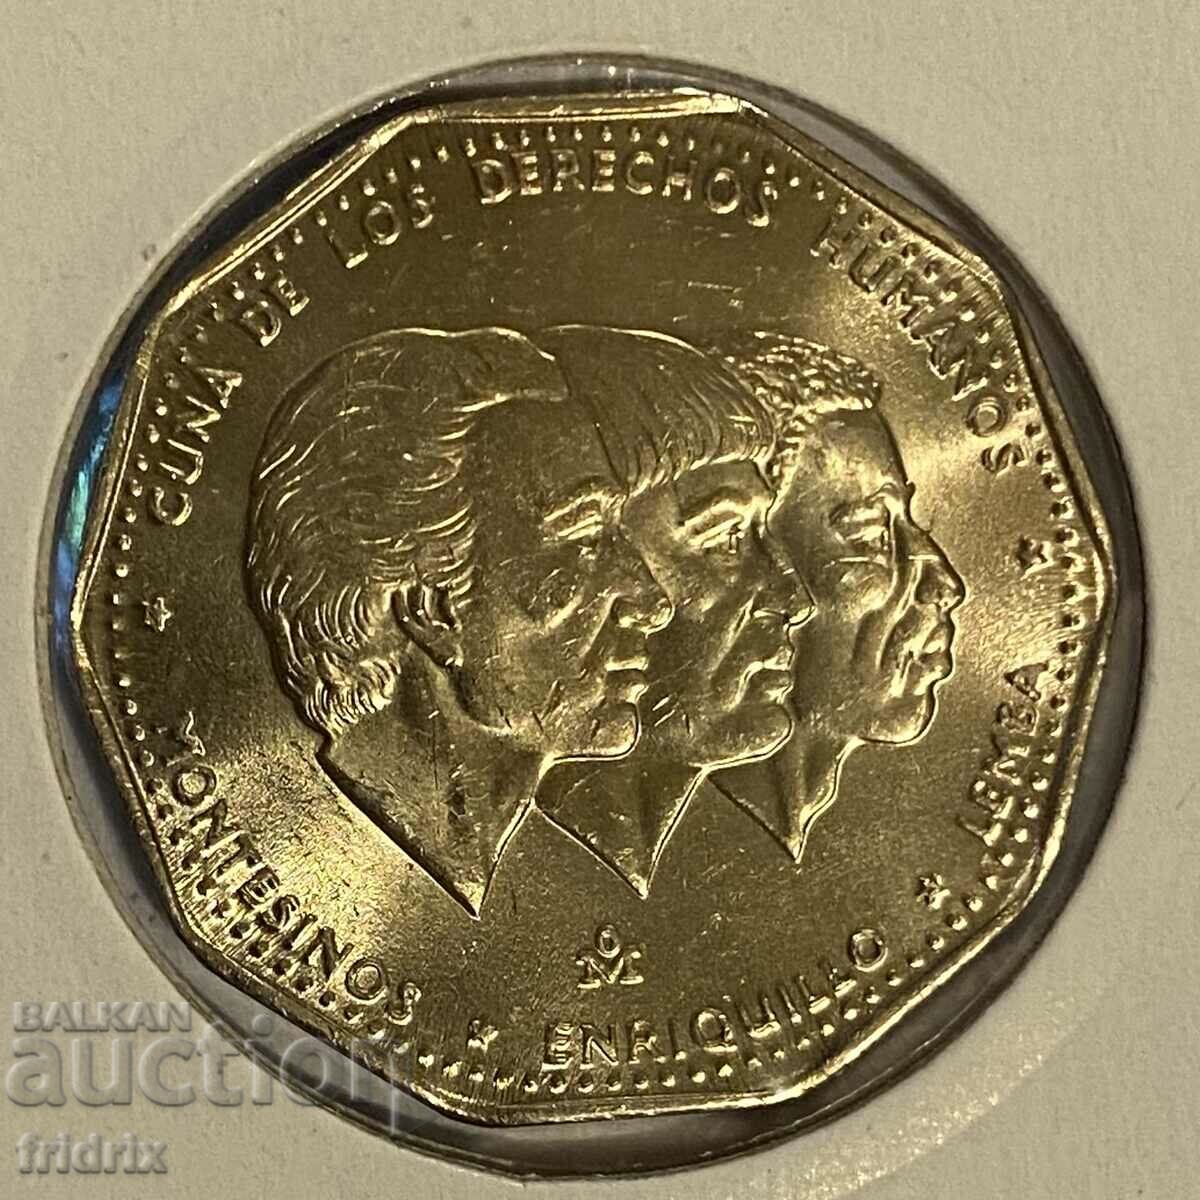 Dominican Rep. 1 peso / Dominican Republic 1 peso 1984